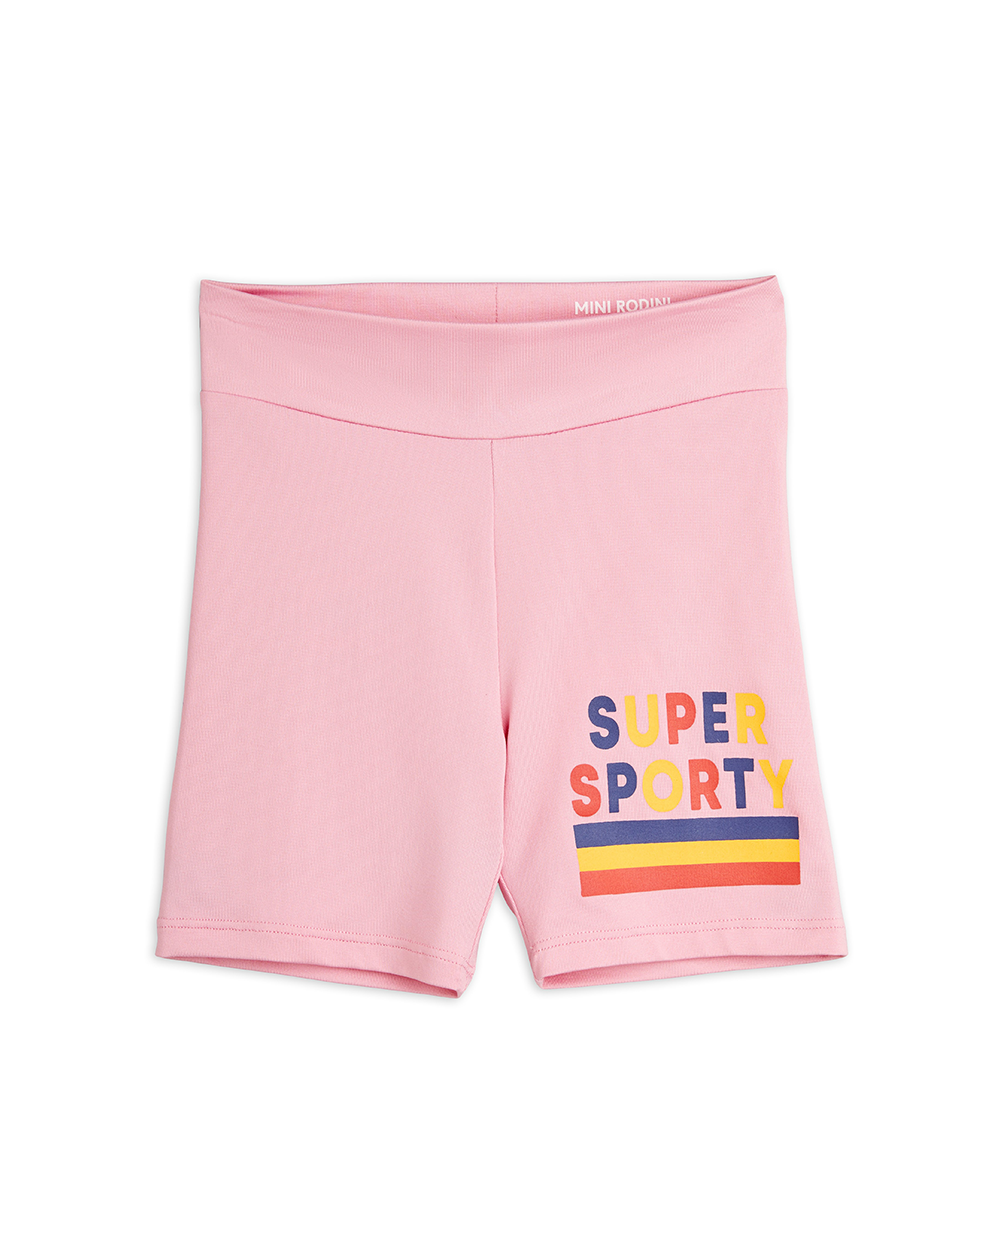 [MINIRODINI] Super sporty sp bike shorts